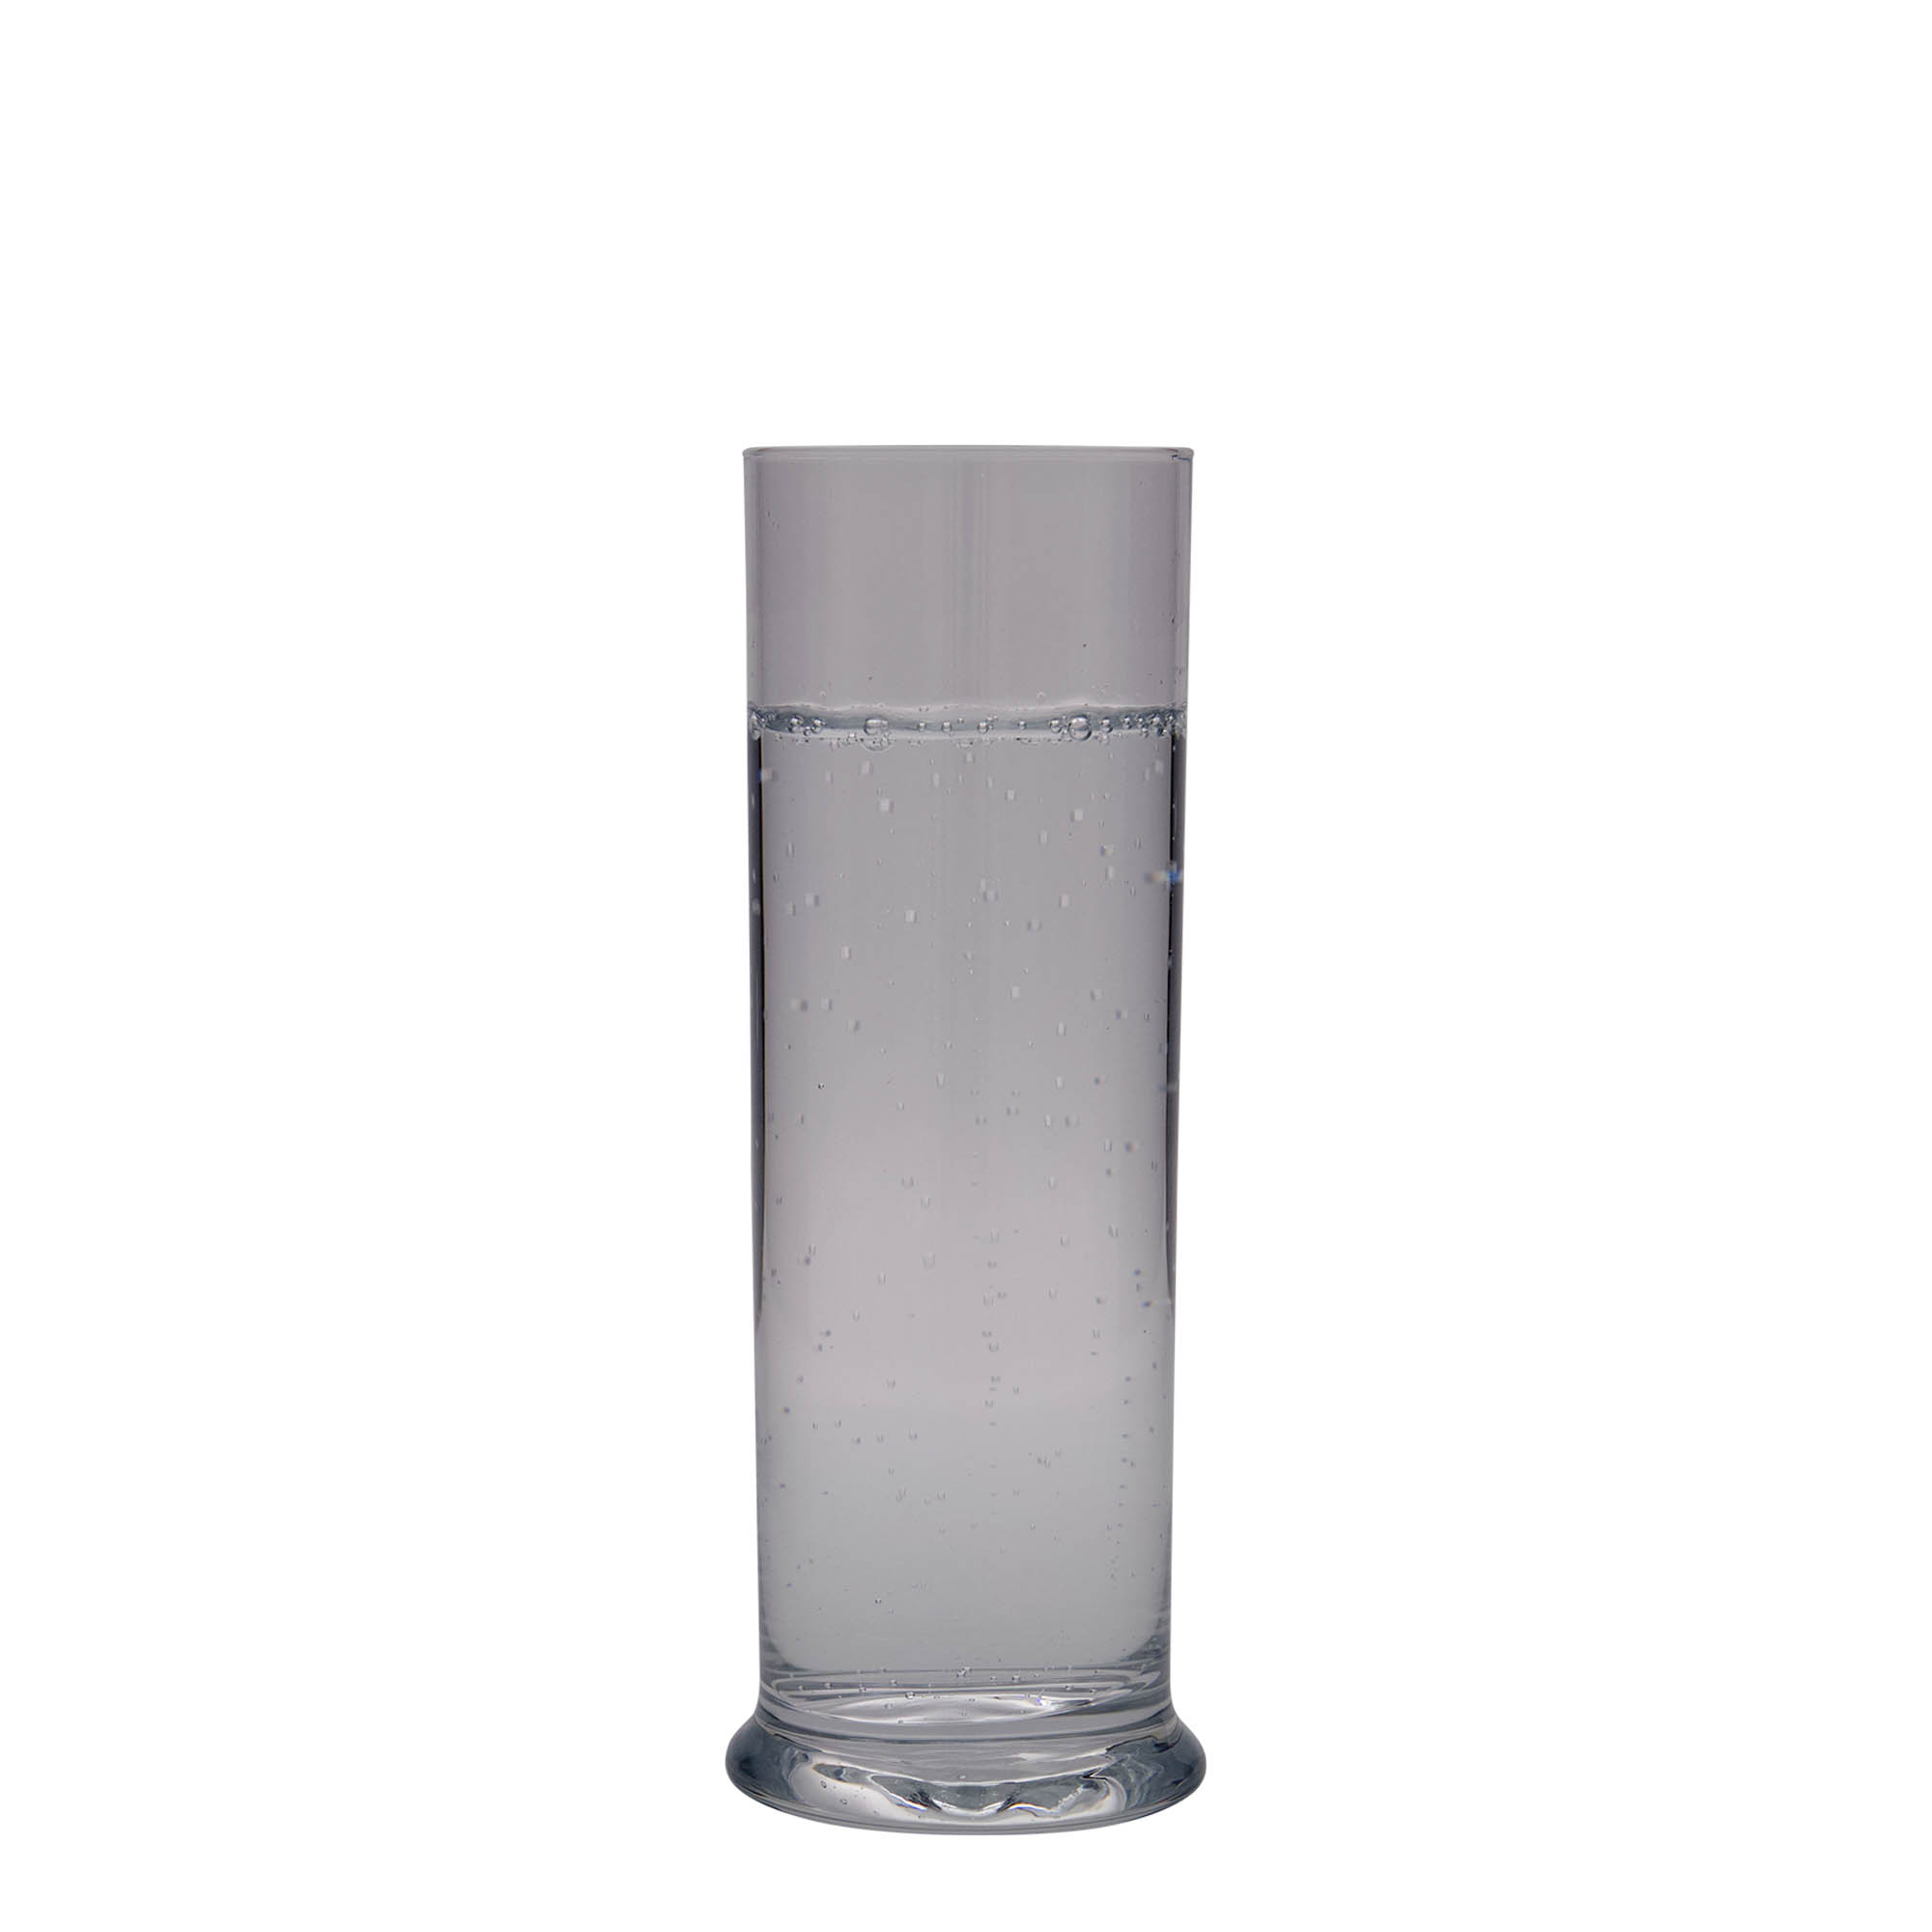 300 ml highball glass 'Club', glass